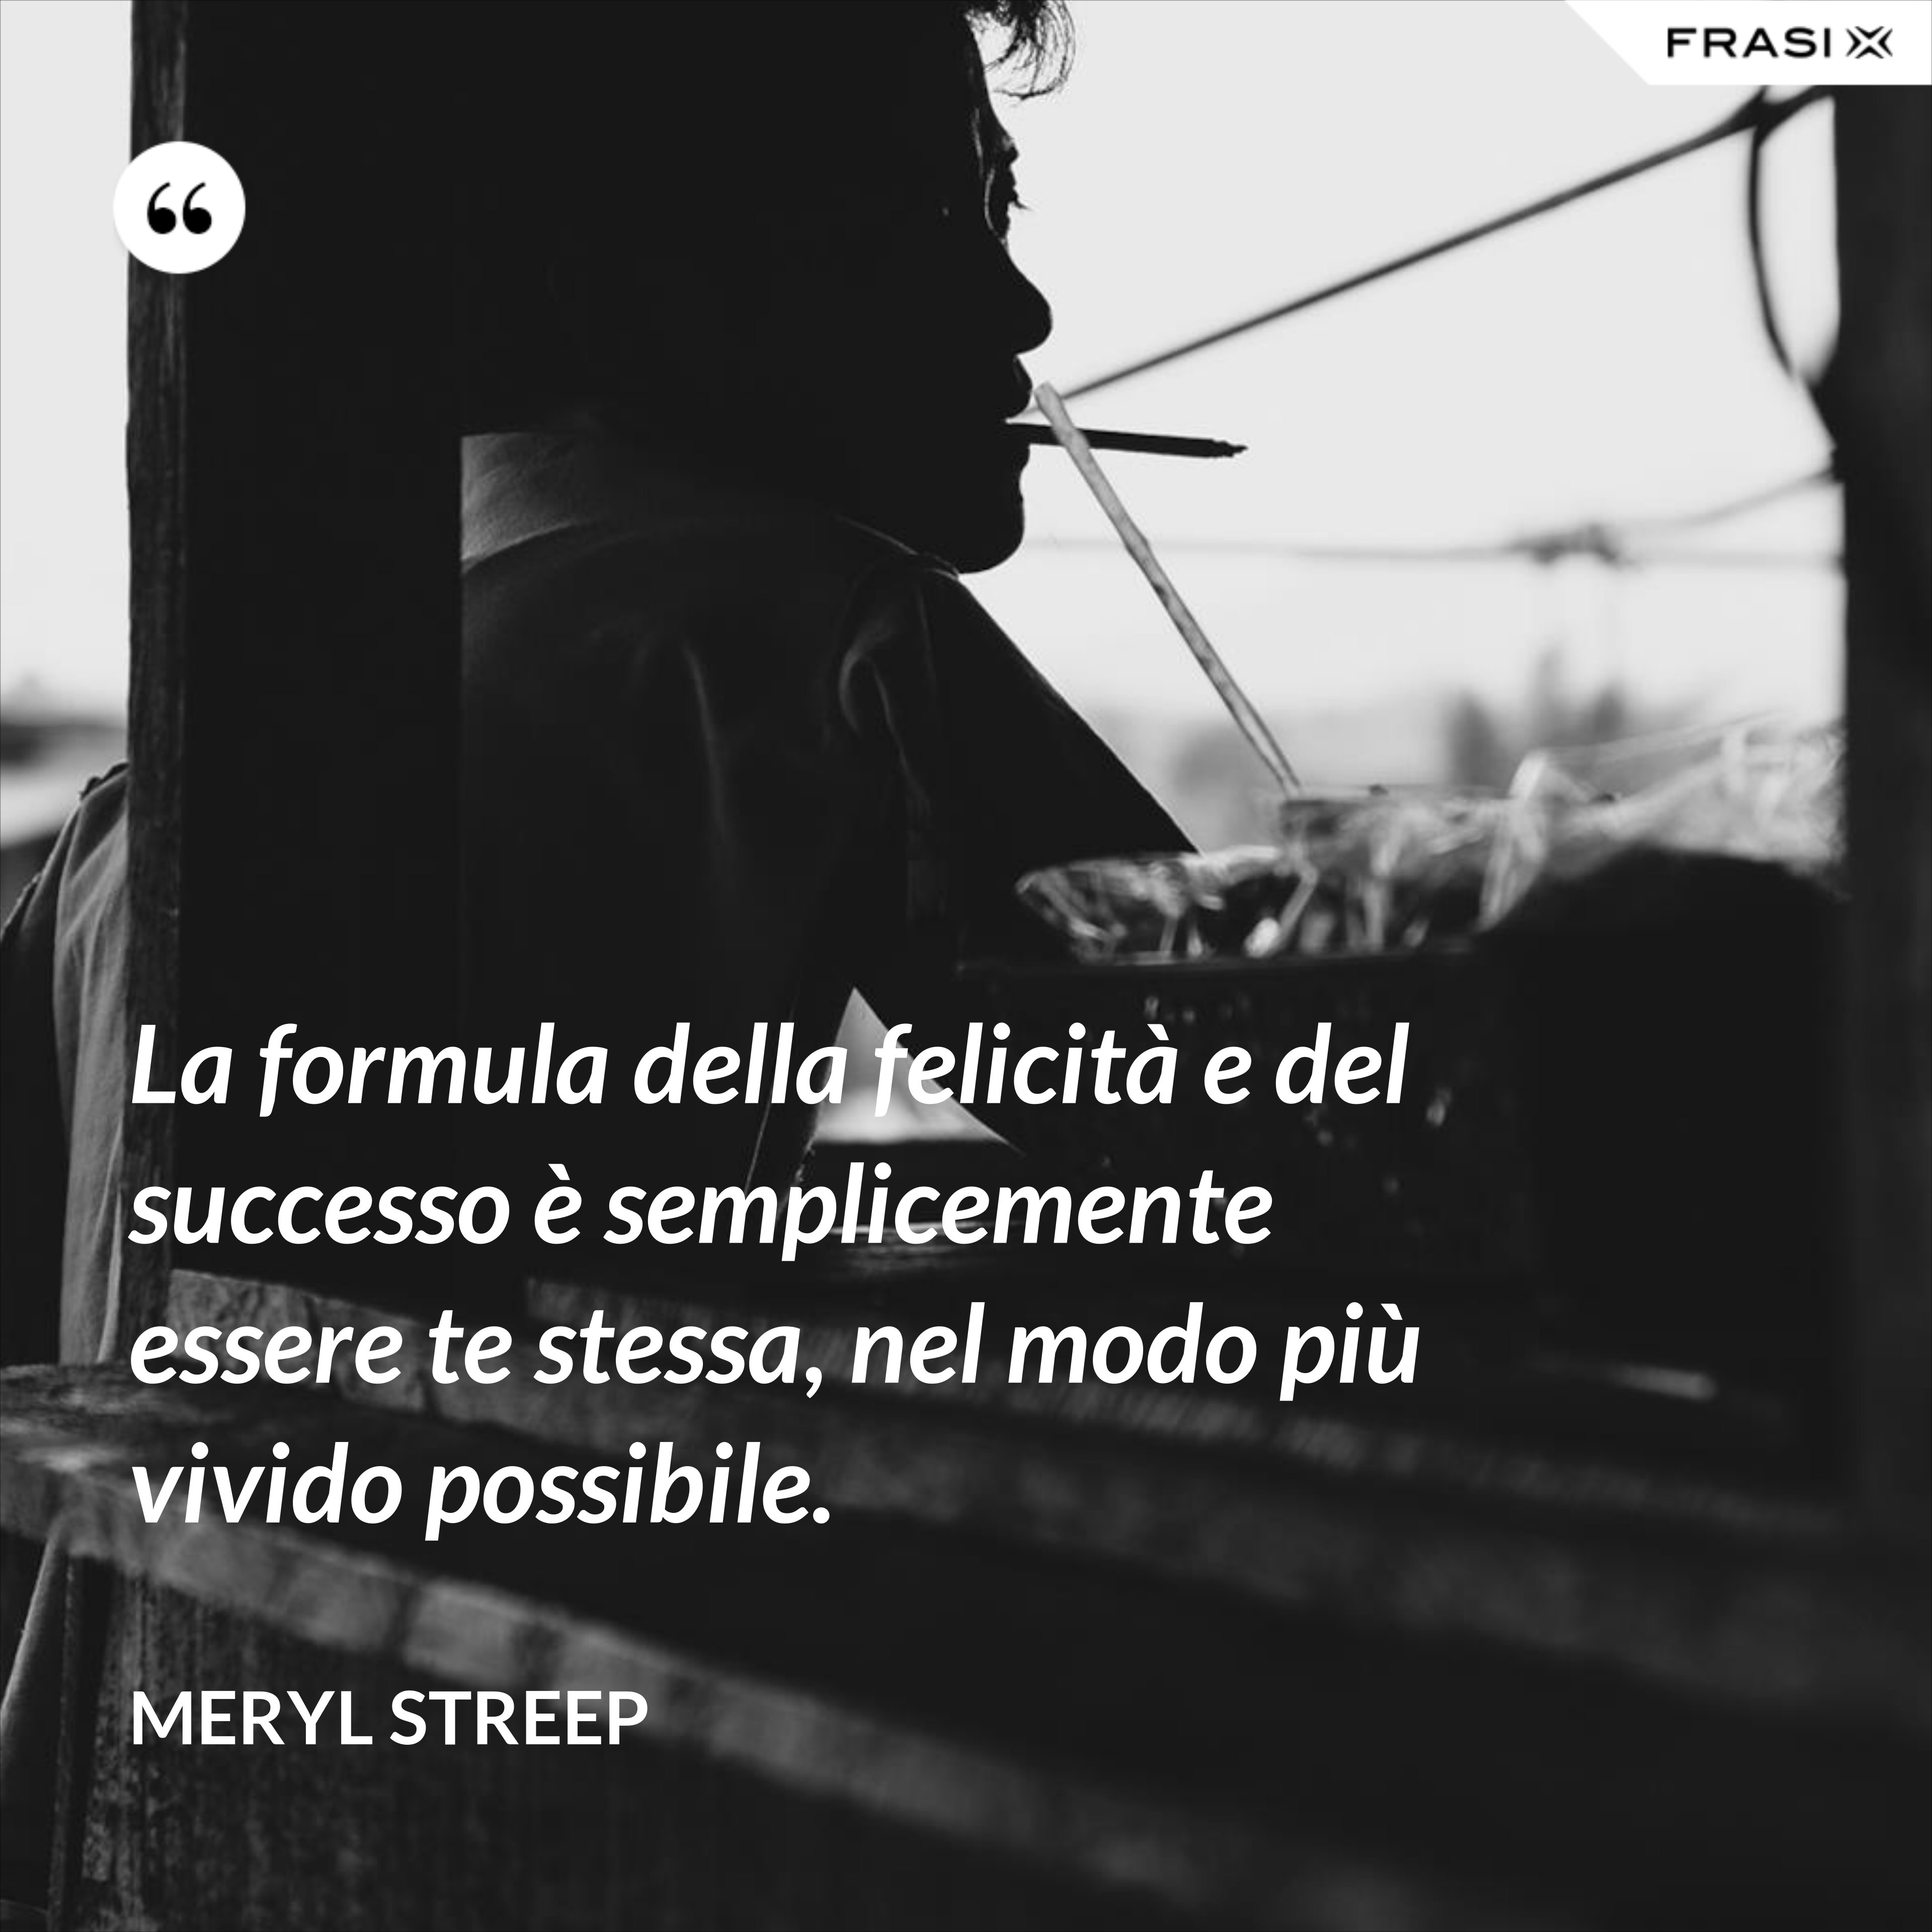 La formula della felicità e del successo è semplicemente essere te stessa, nel modo più vivido possibile. - Meryl Streep